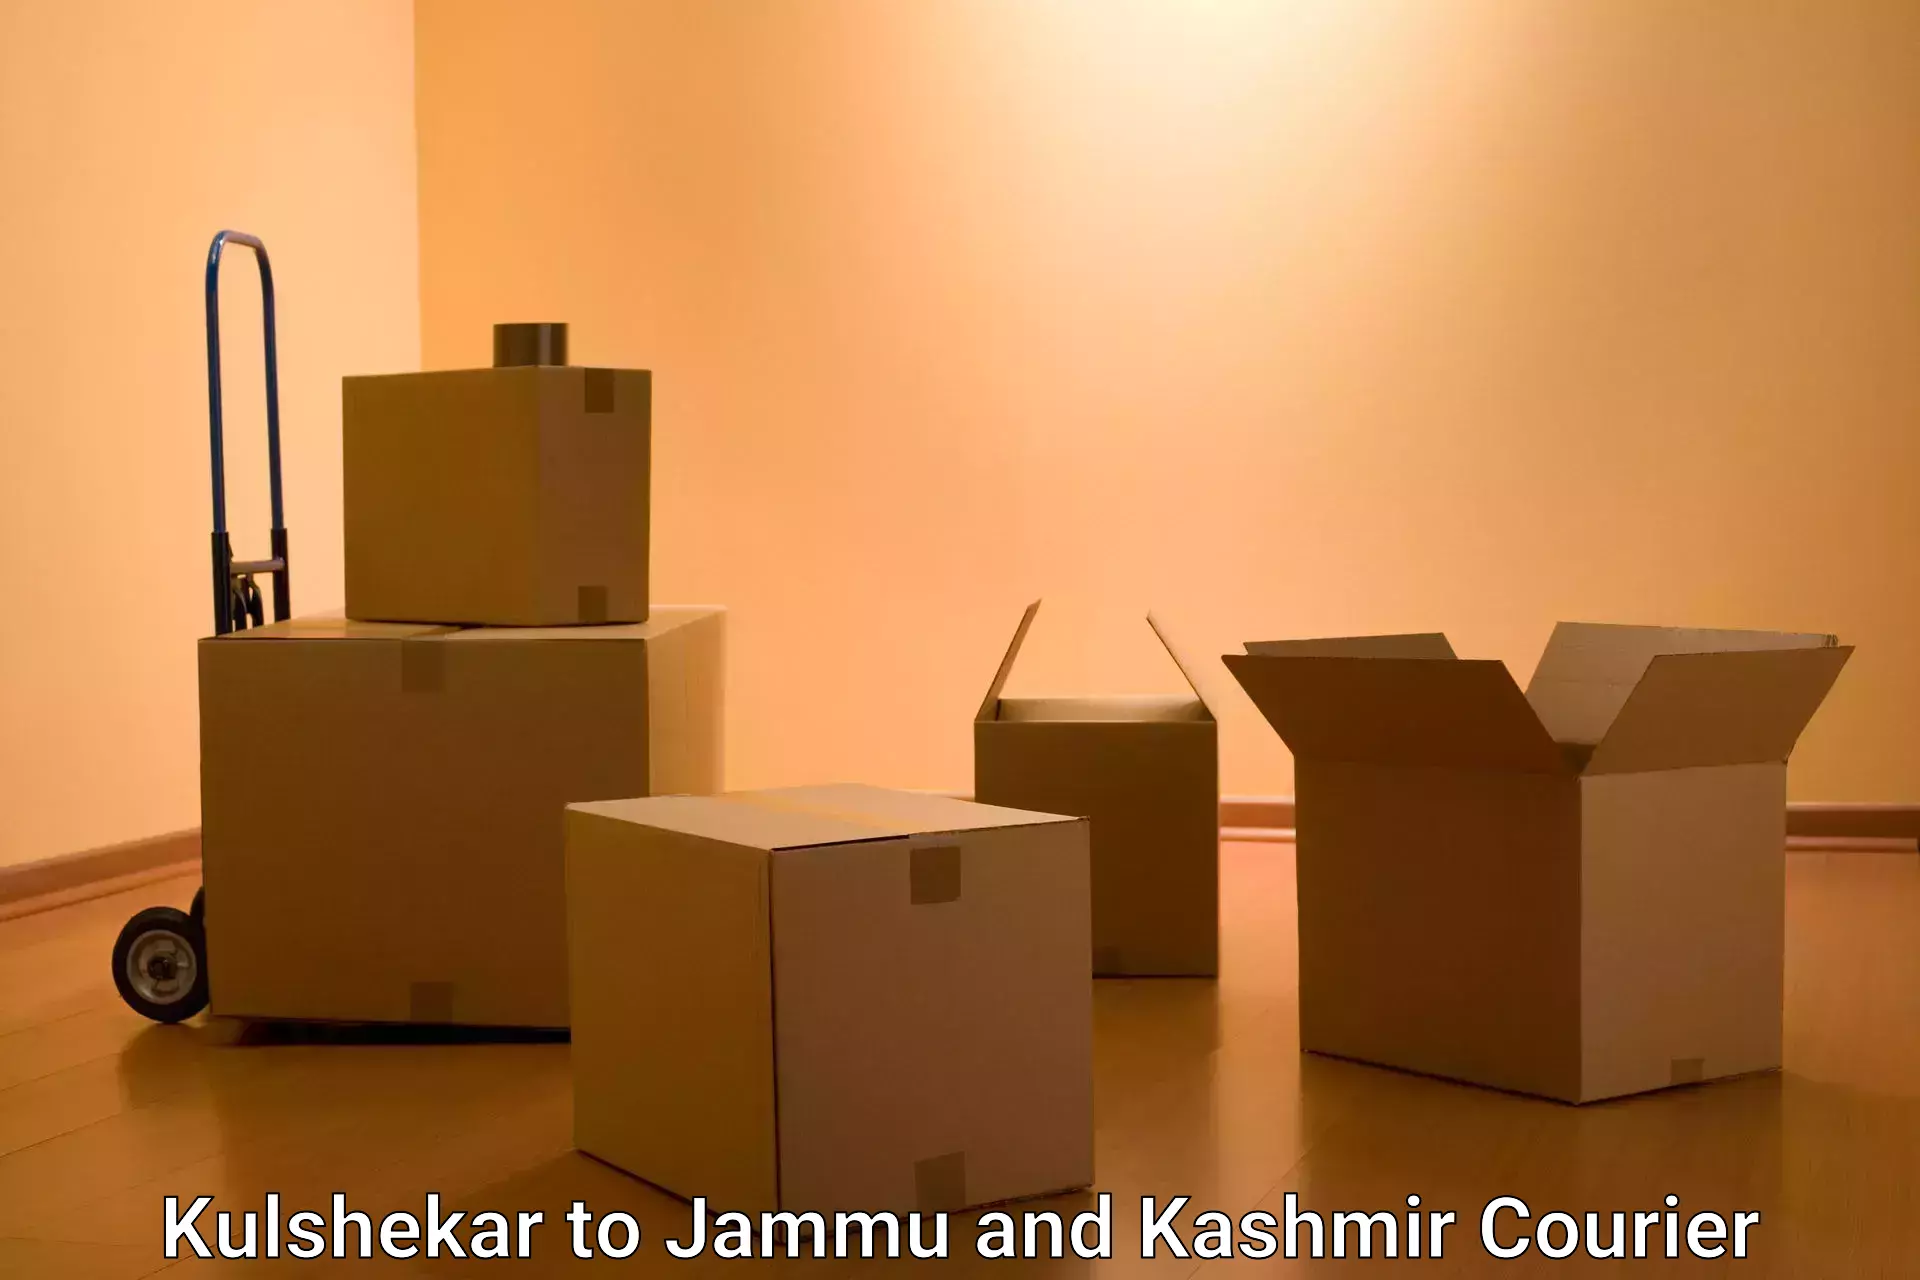 Bulk shipment Kulshekar to Jammu and Kashmir